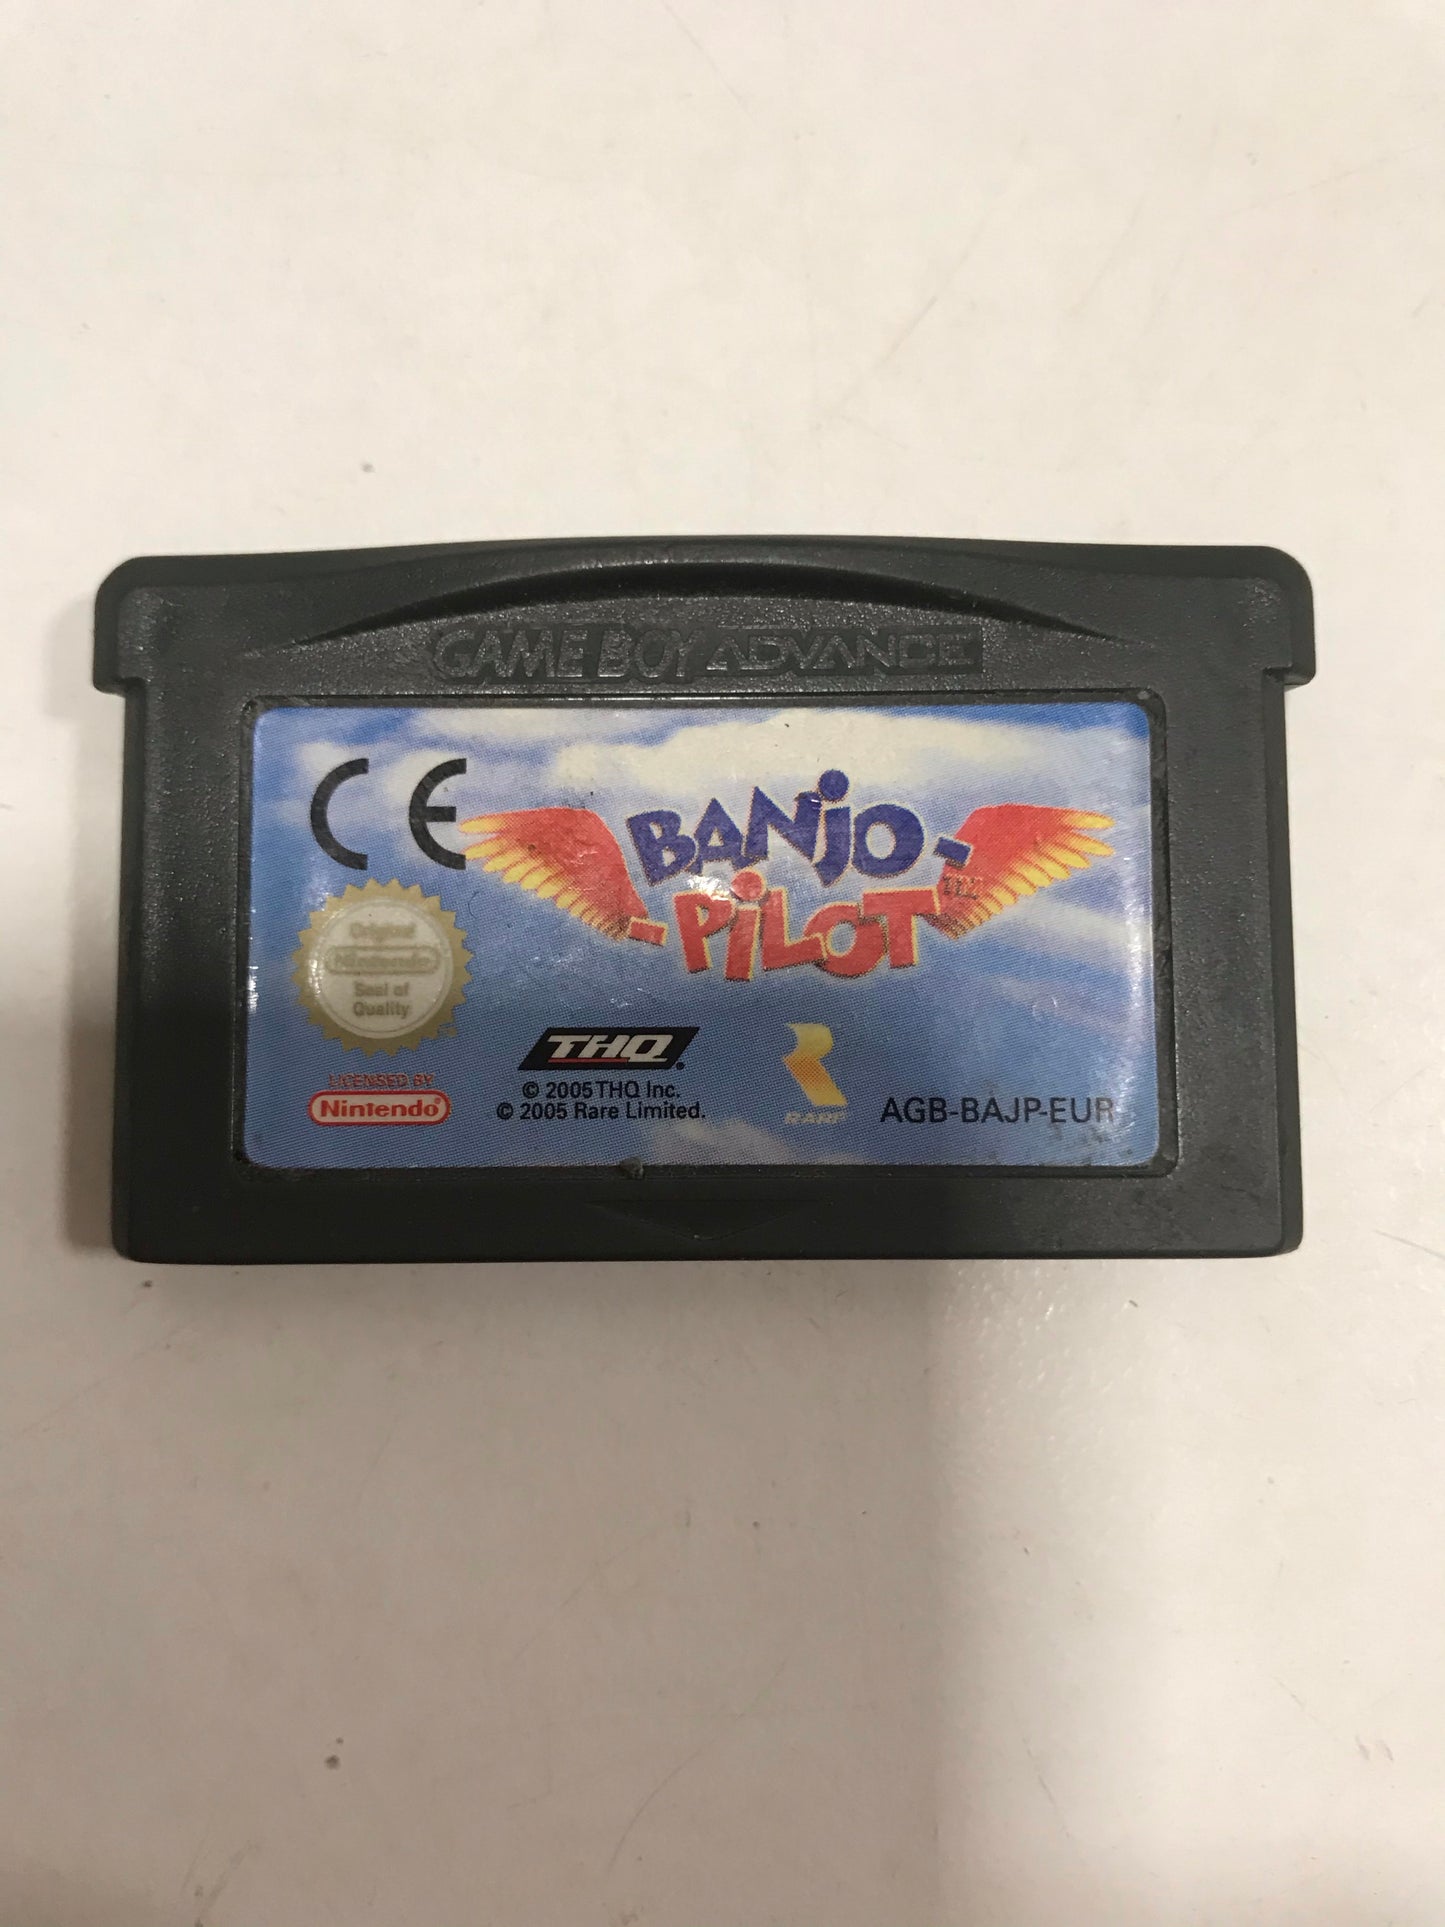 Banjo pilot EUR Nintendo Game boy advance